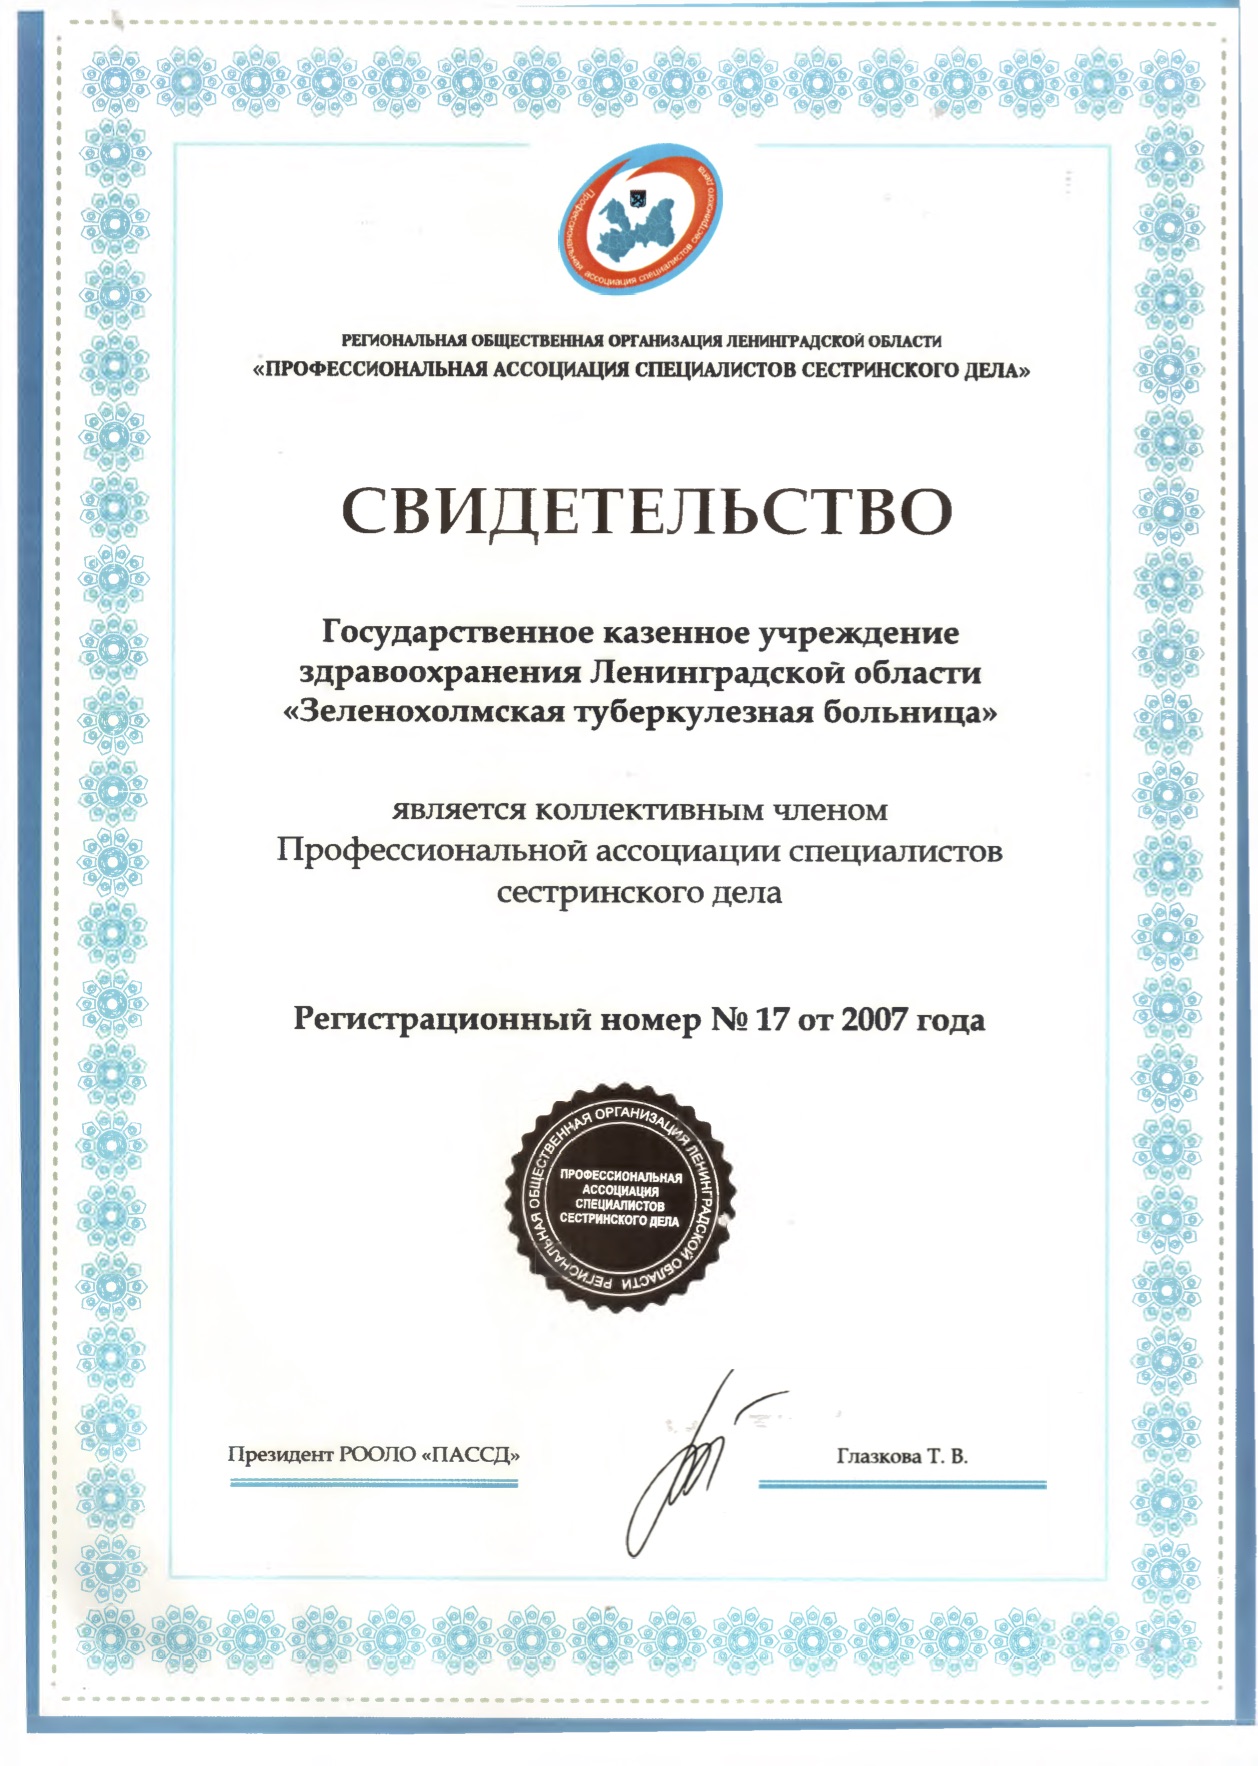 ГКУЗ ЛО "Зеленохолмская туберкулезная больница": сертификат